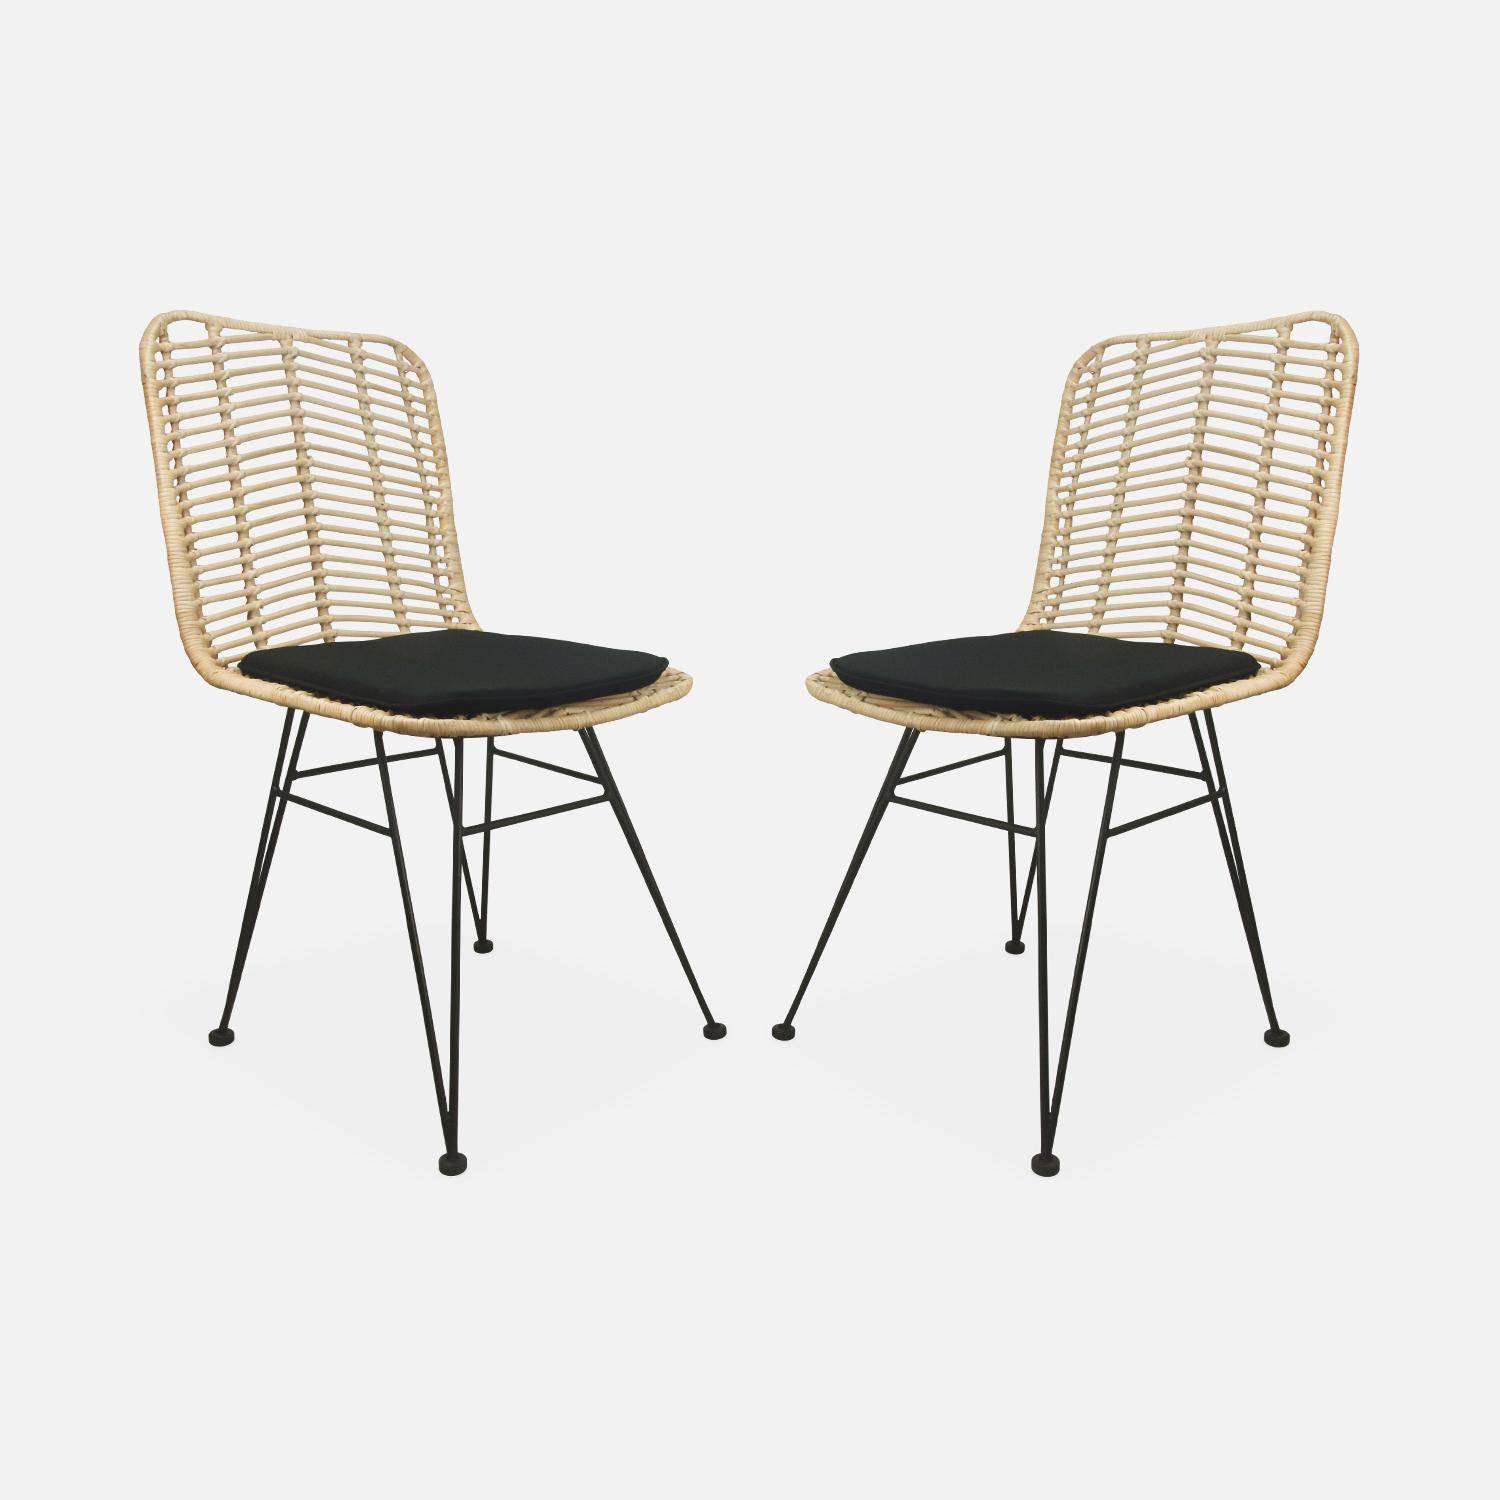 Deux chaises en rotin naturel et métal, coussins noirs - Cahya Photo4